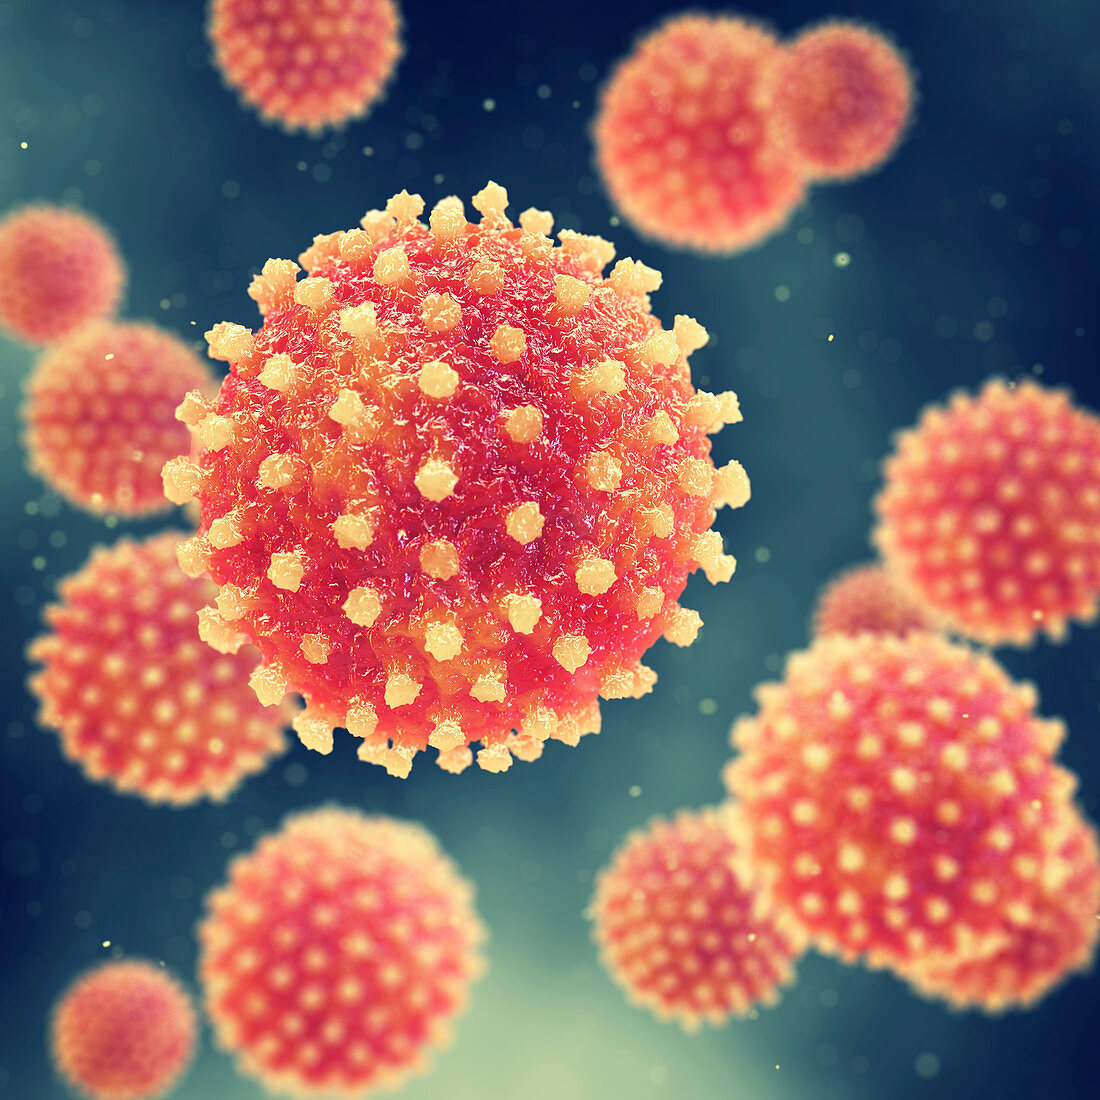 Hepatitis viruses, illustration